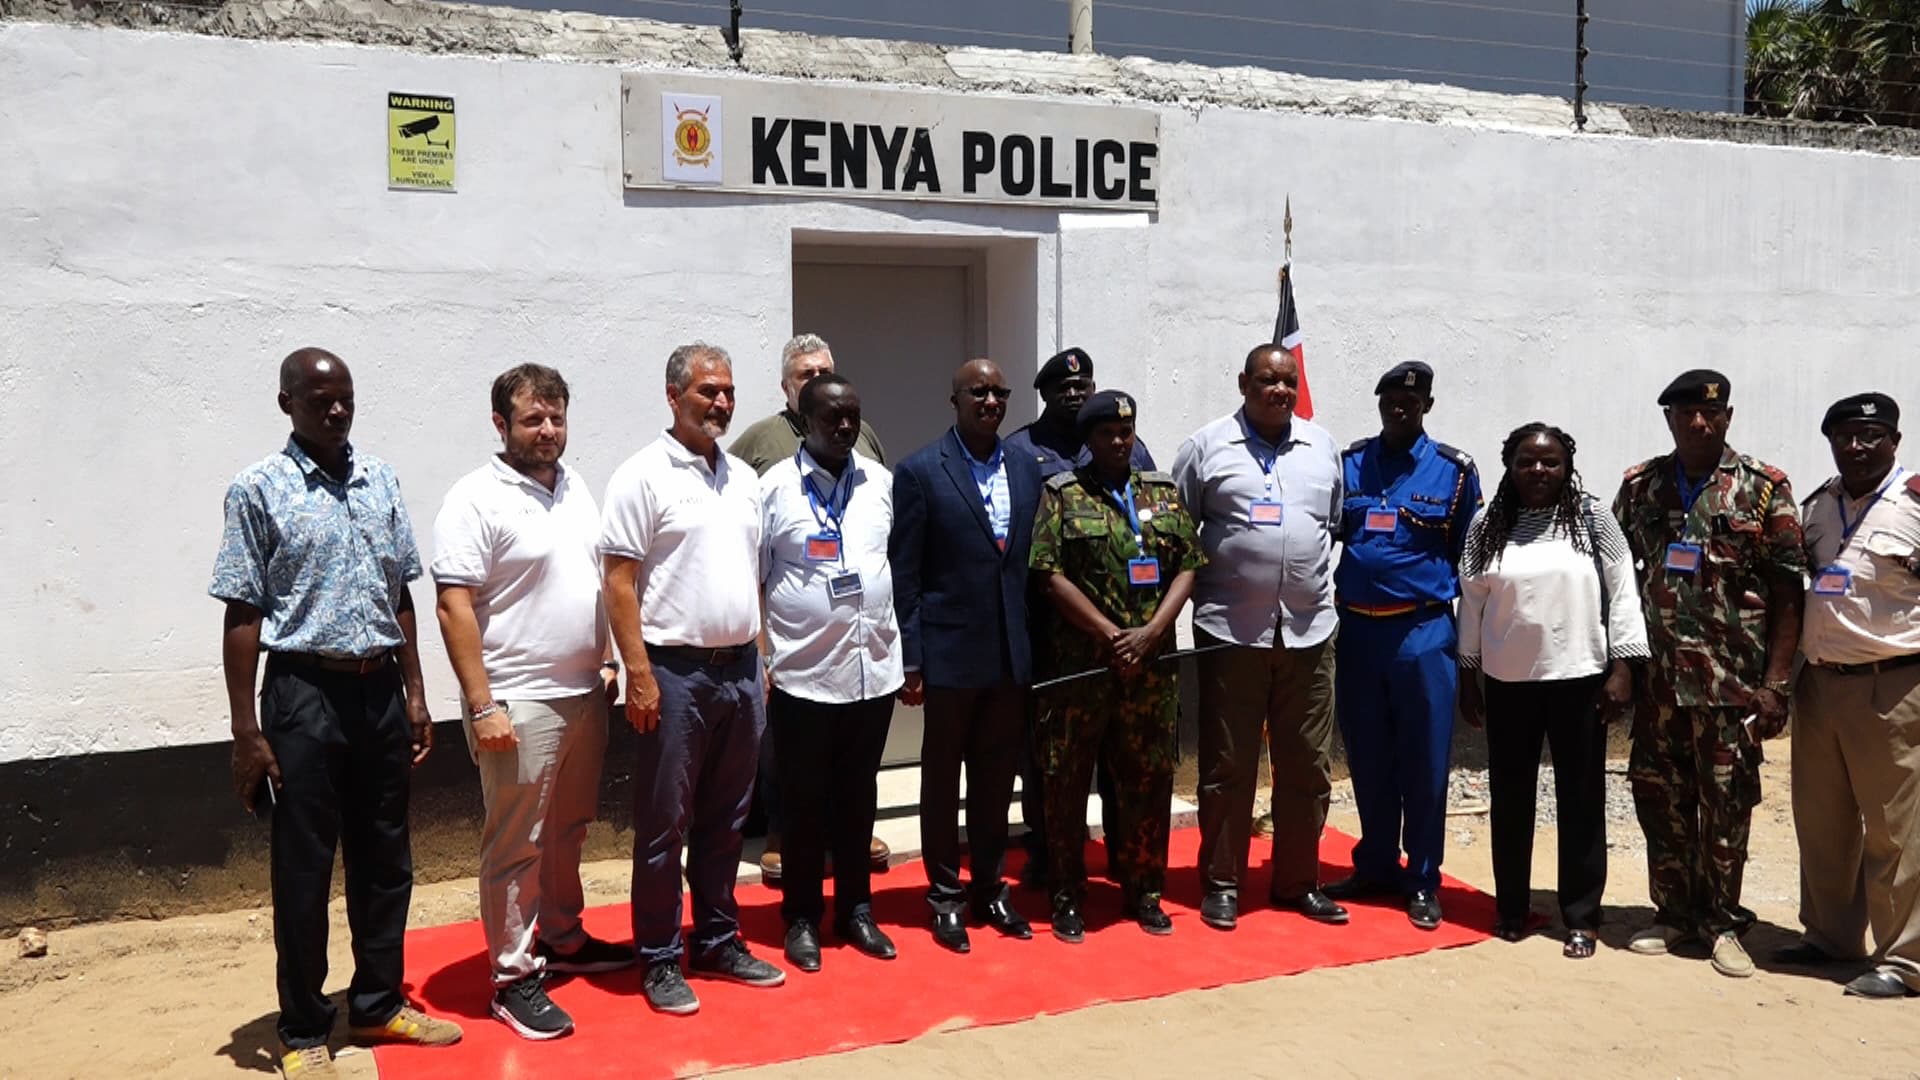 Presentata la nuova stazione di polizia per l’area di Ngomeni